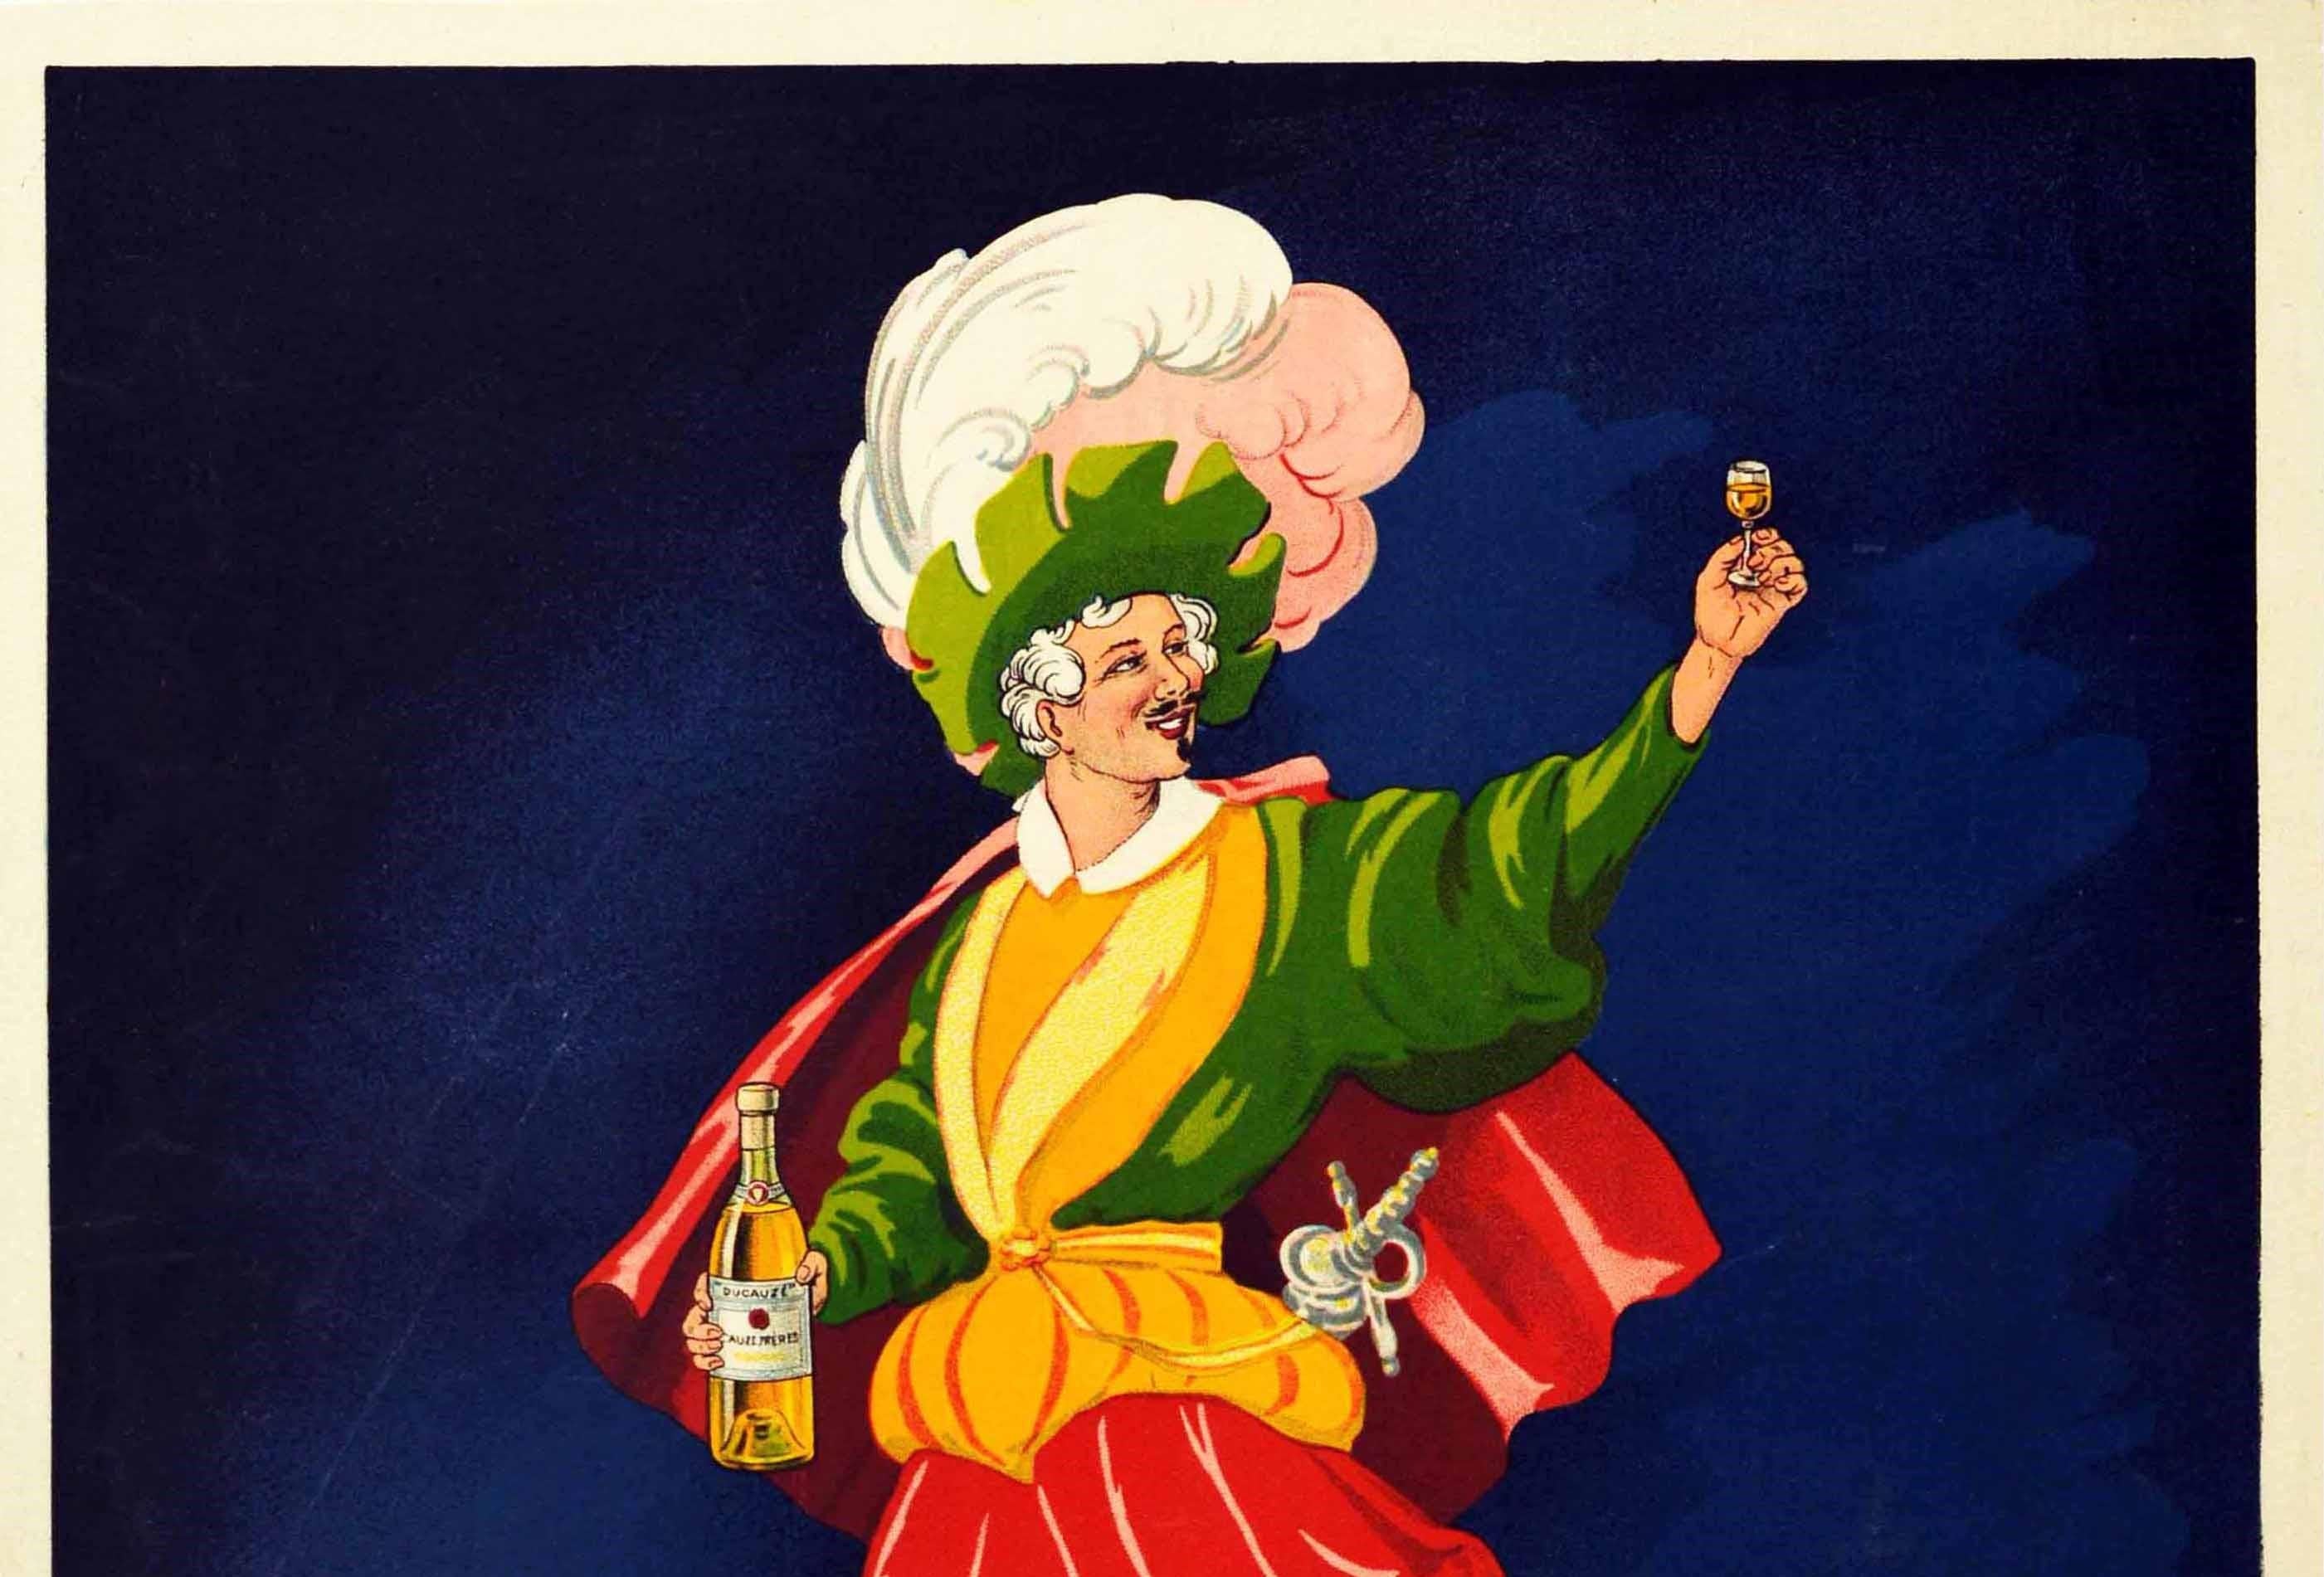 Affiche publicitaire originale et ancienne pour le Cognac Ducauze Fama A Base De Calidad / Fame Based On Quality présentant un design vibrant et amusant d'un homme souriant en tenue de pirate ou de mousquetaire dans une veste verte et jaune avec une